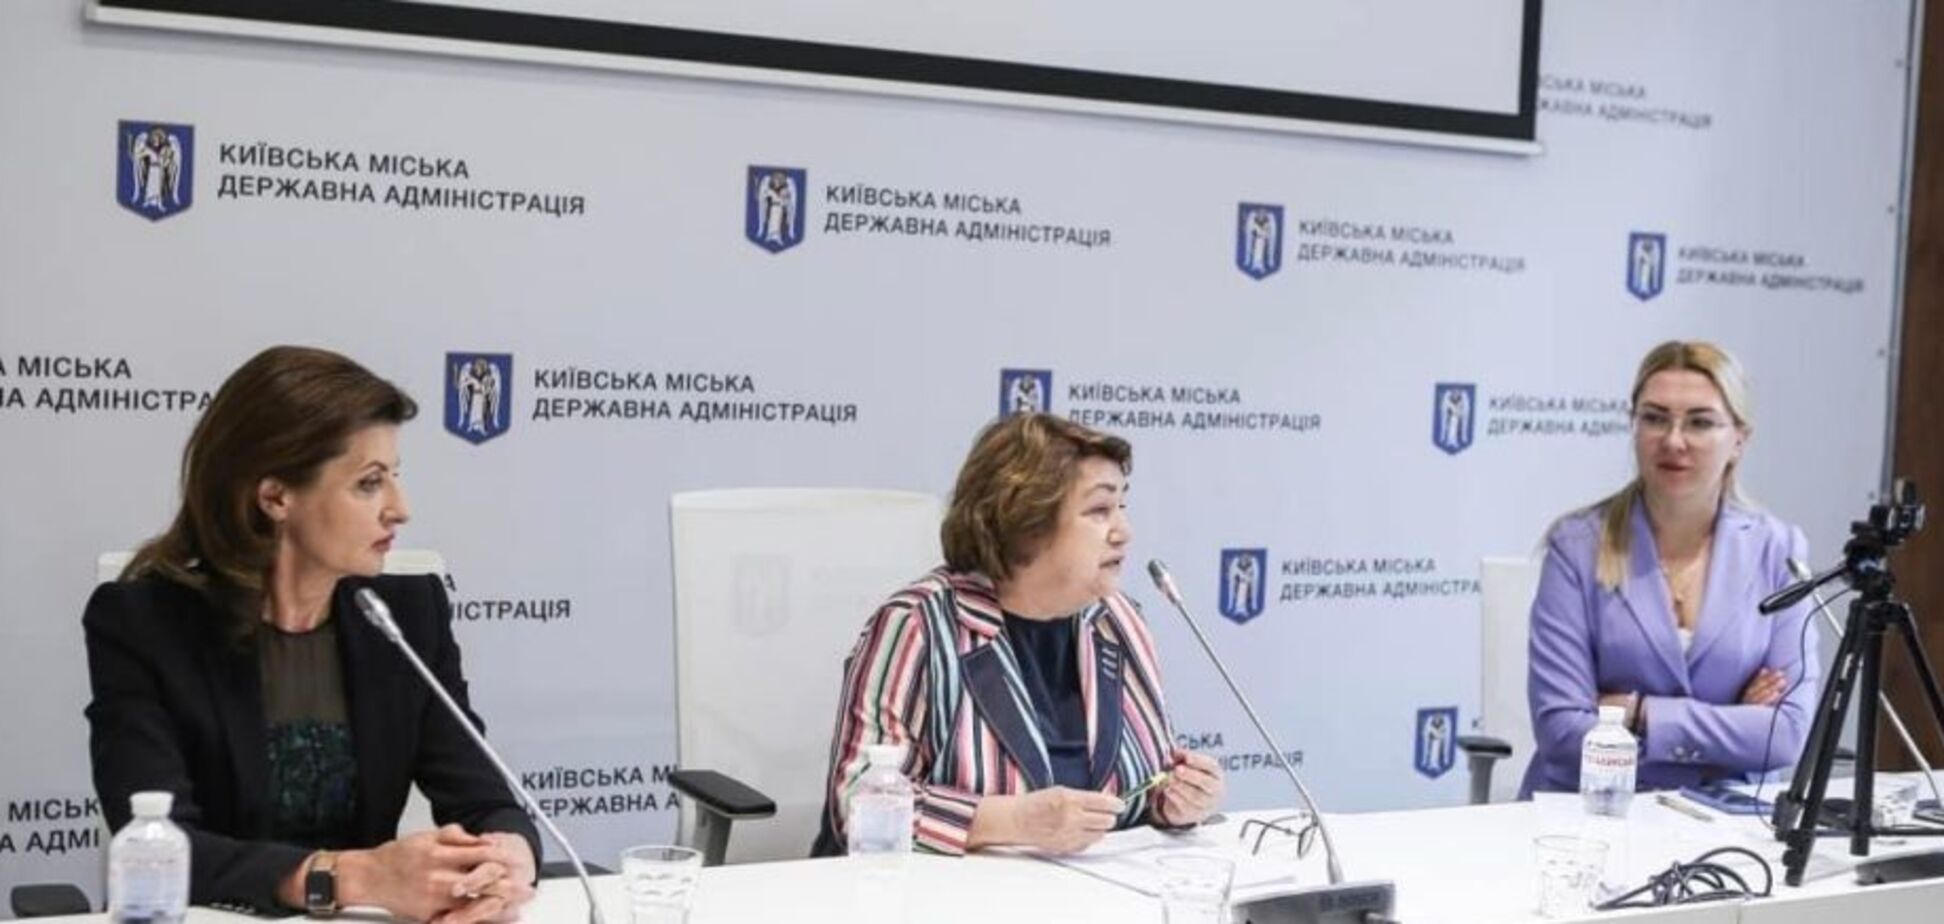 Киев имеет эффективную сеть заведений помощи жертвам домашнего насилия, – Марина Порошенко